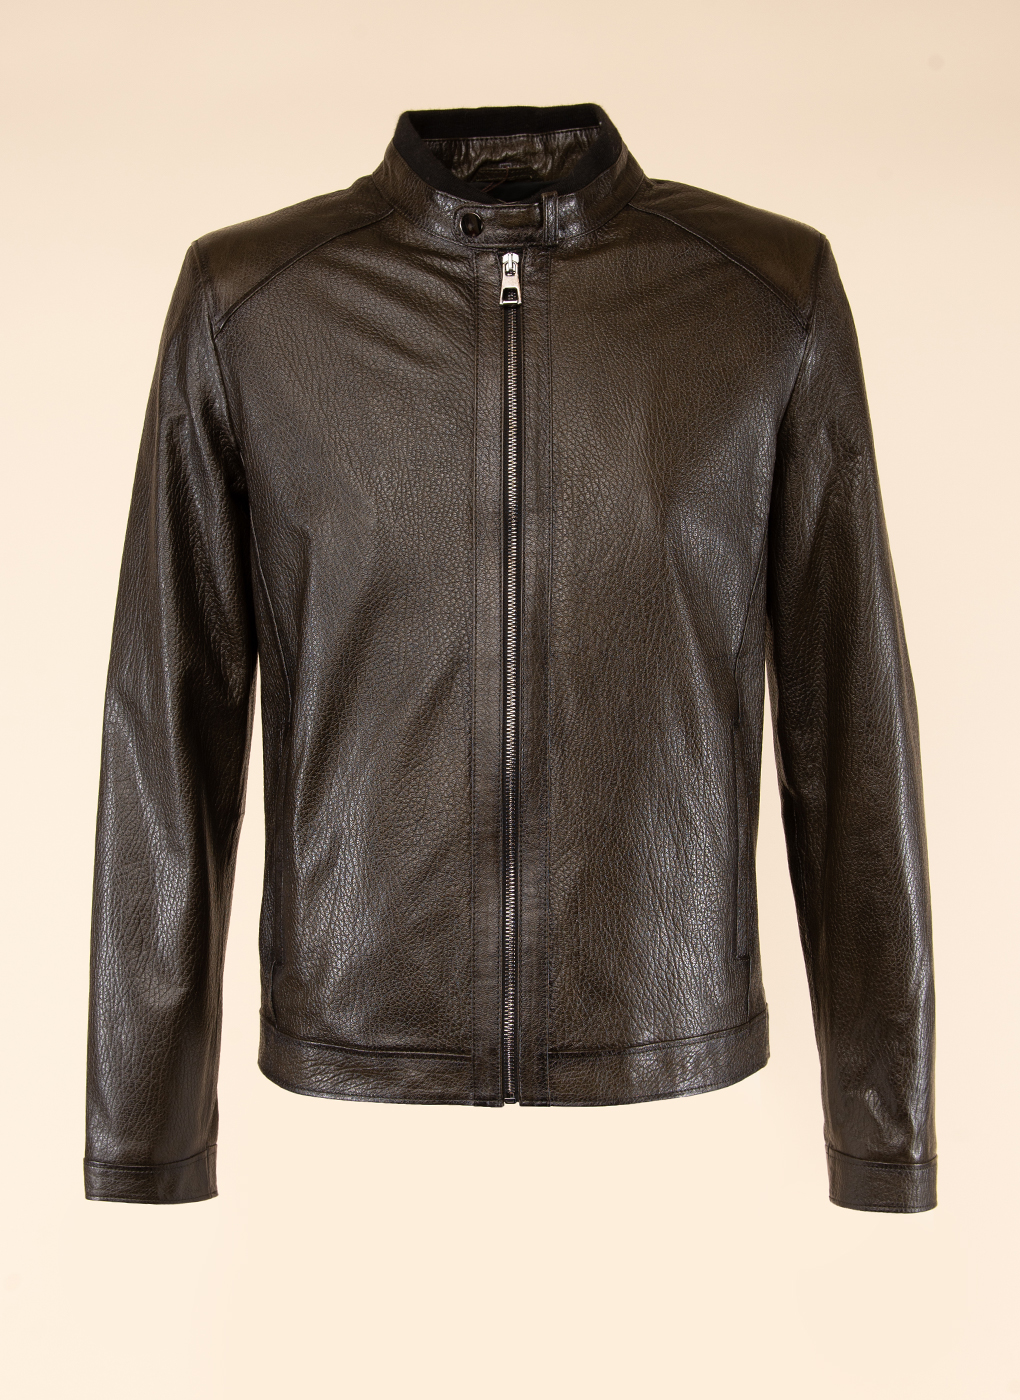 Кожаная куртка мужская Каляев 52078 коричневая 62 RU